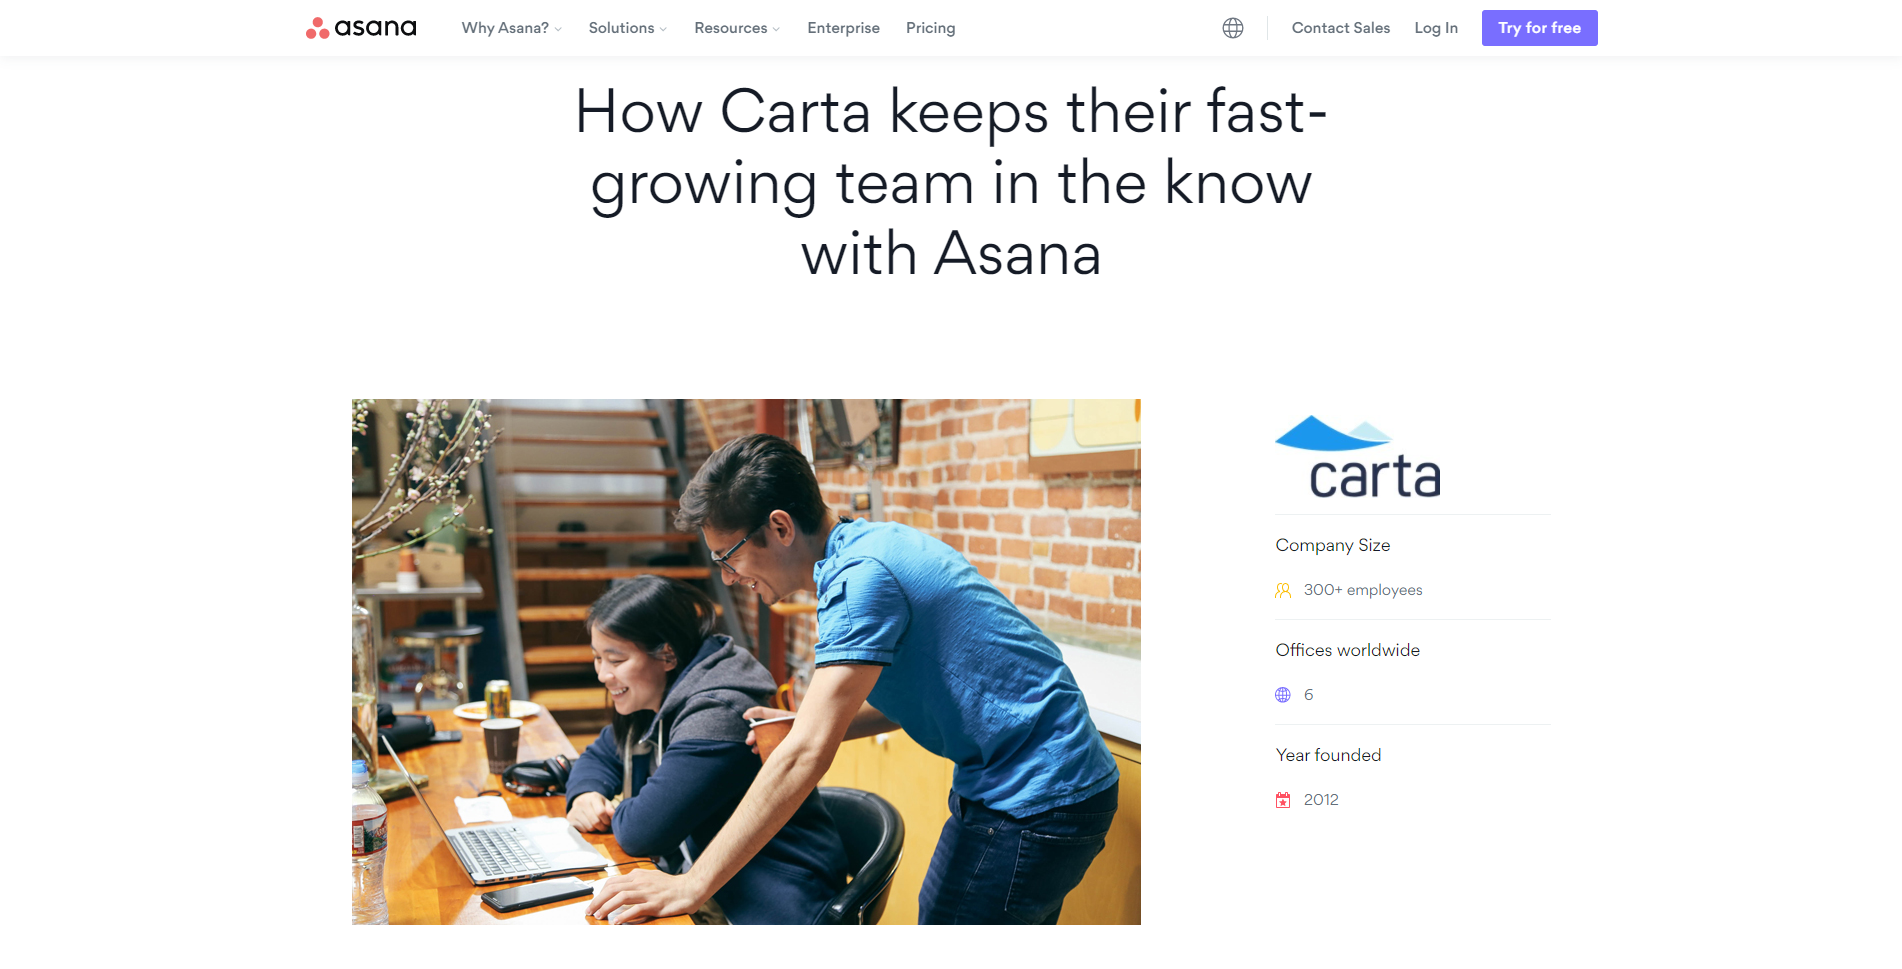 Asana marketing case study for Carta